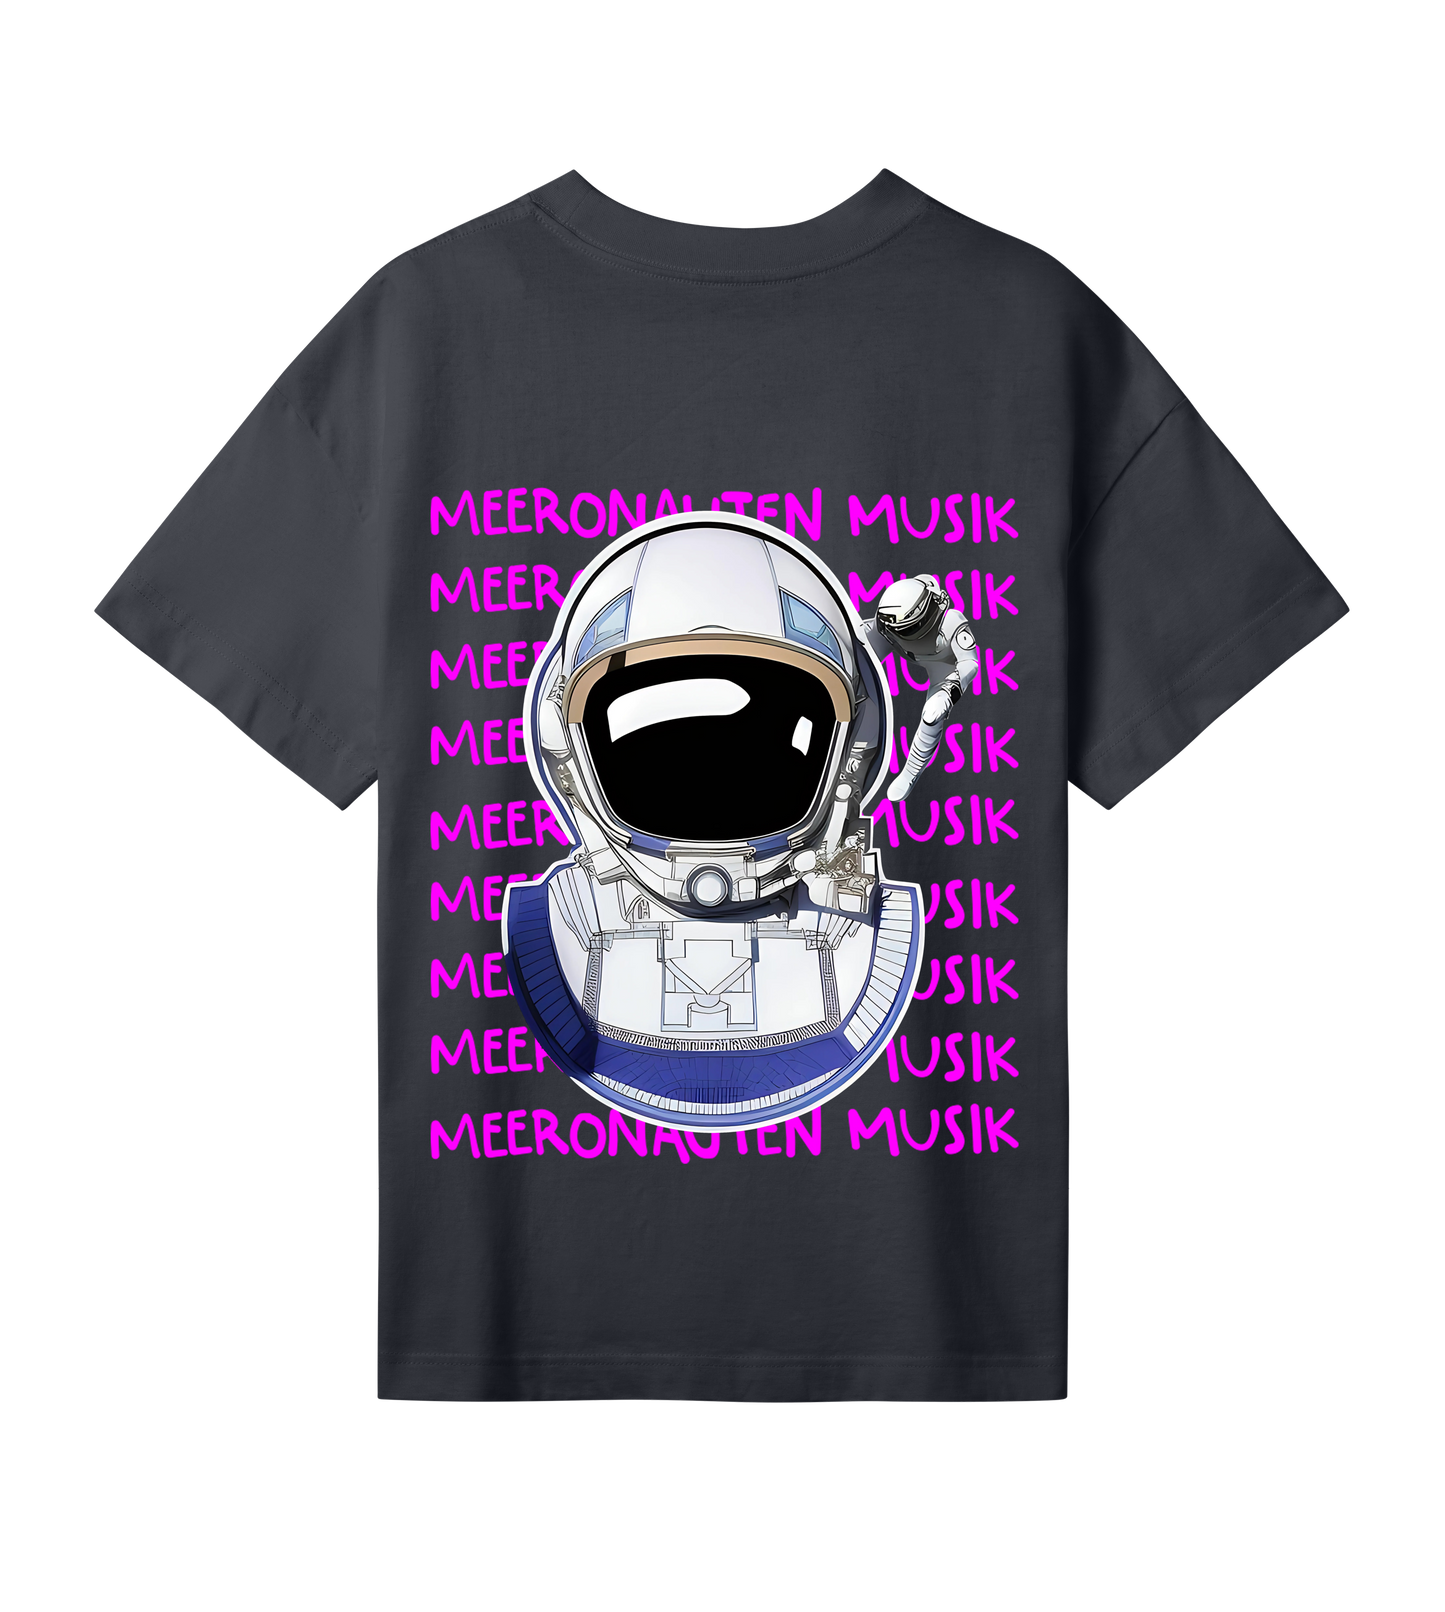 MeeronautenMusik Antihero Oversized Shirt Fem